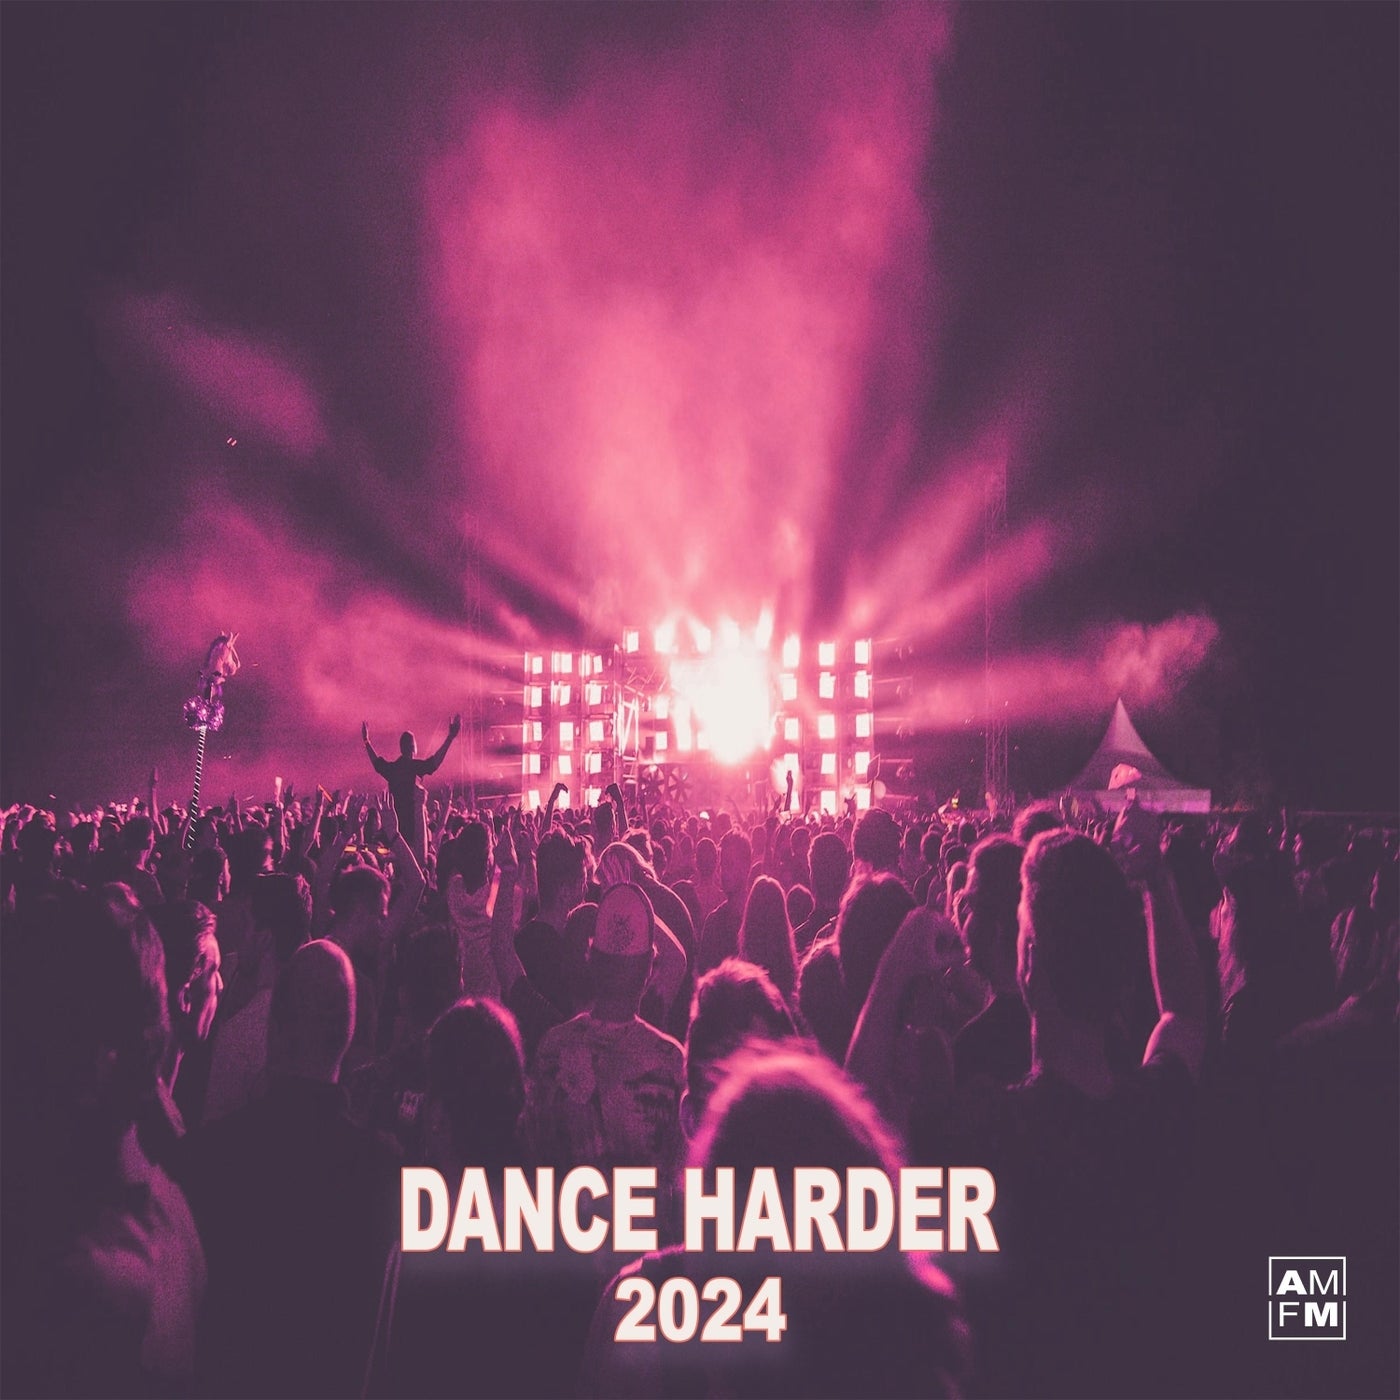 Dance Harder 2024